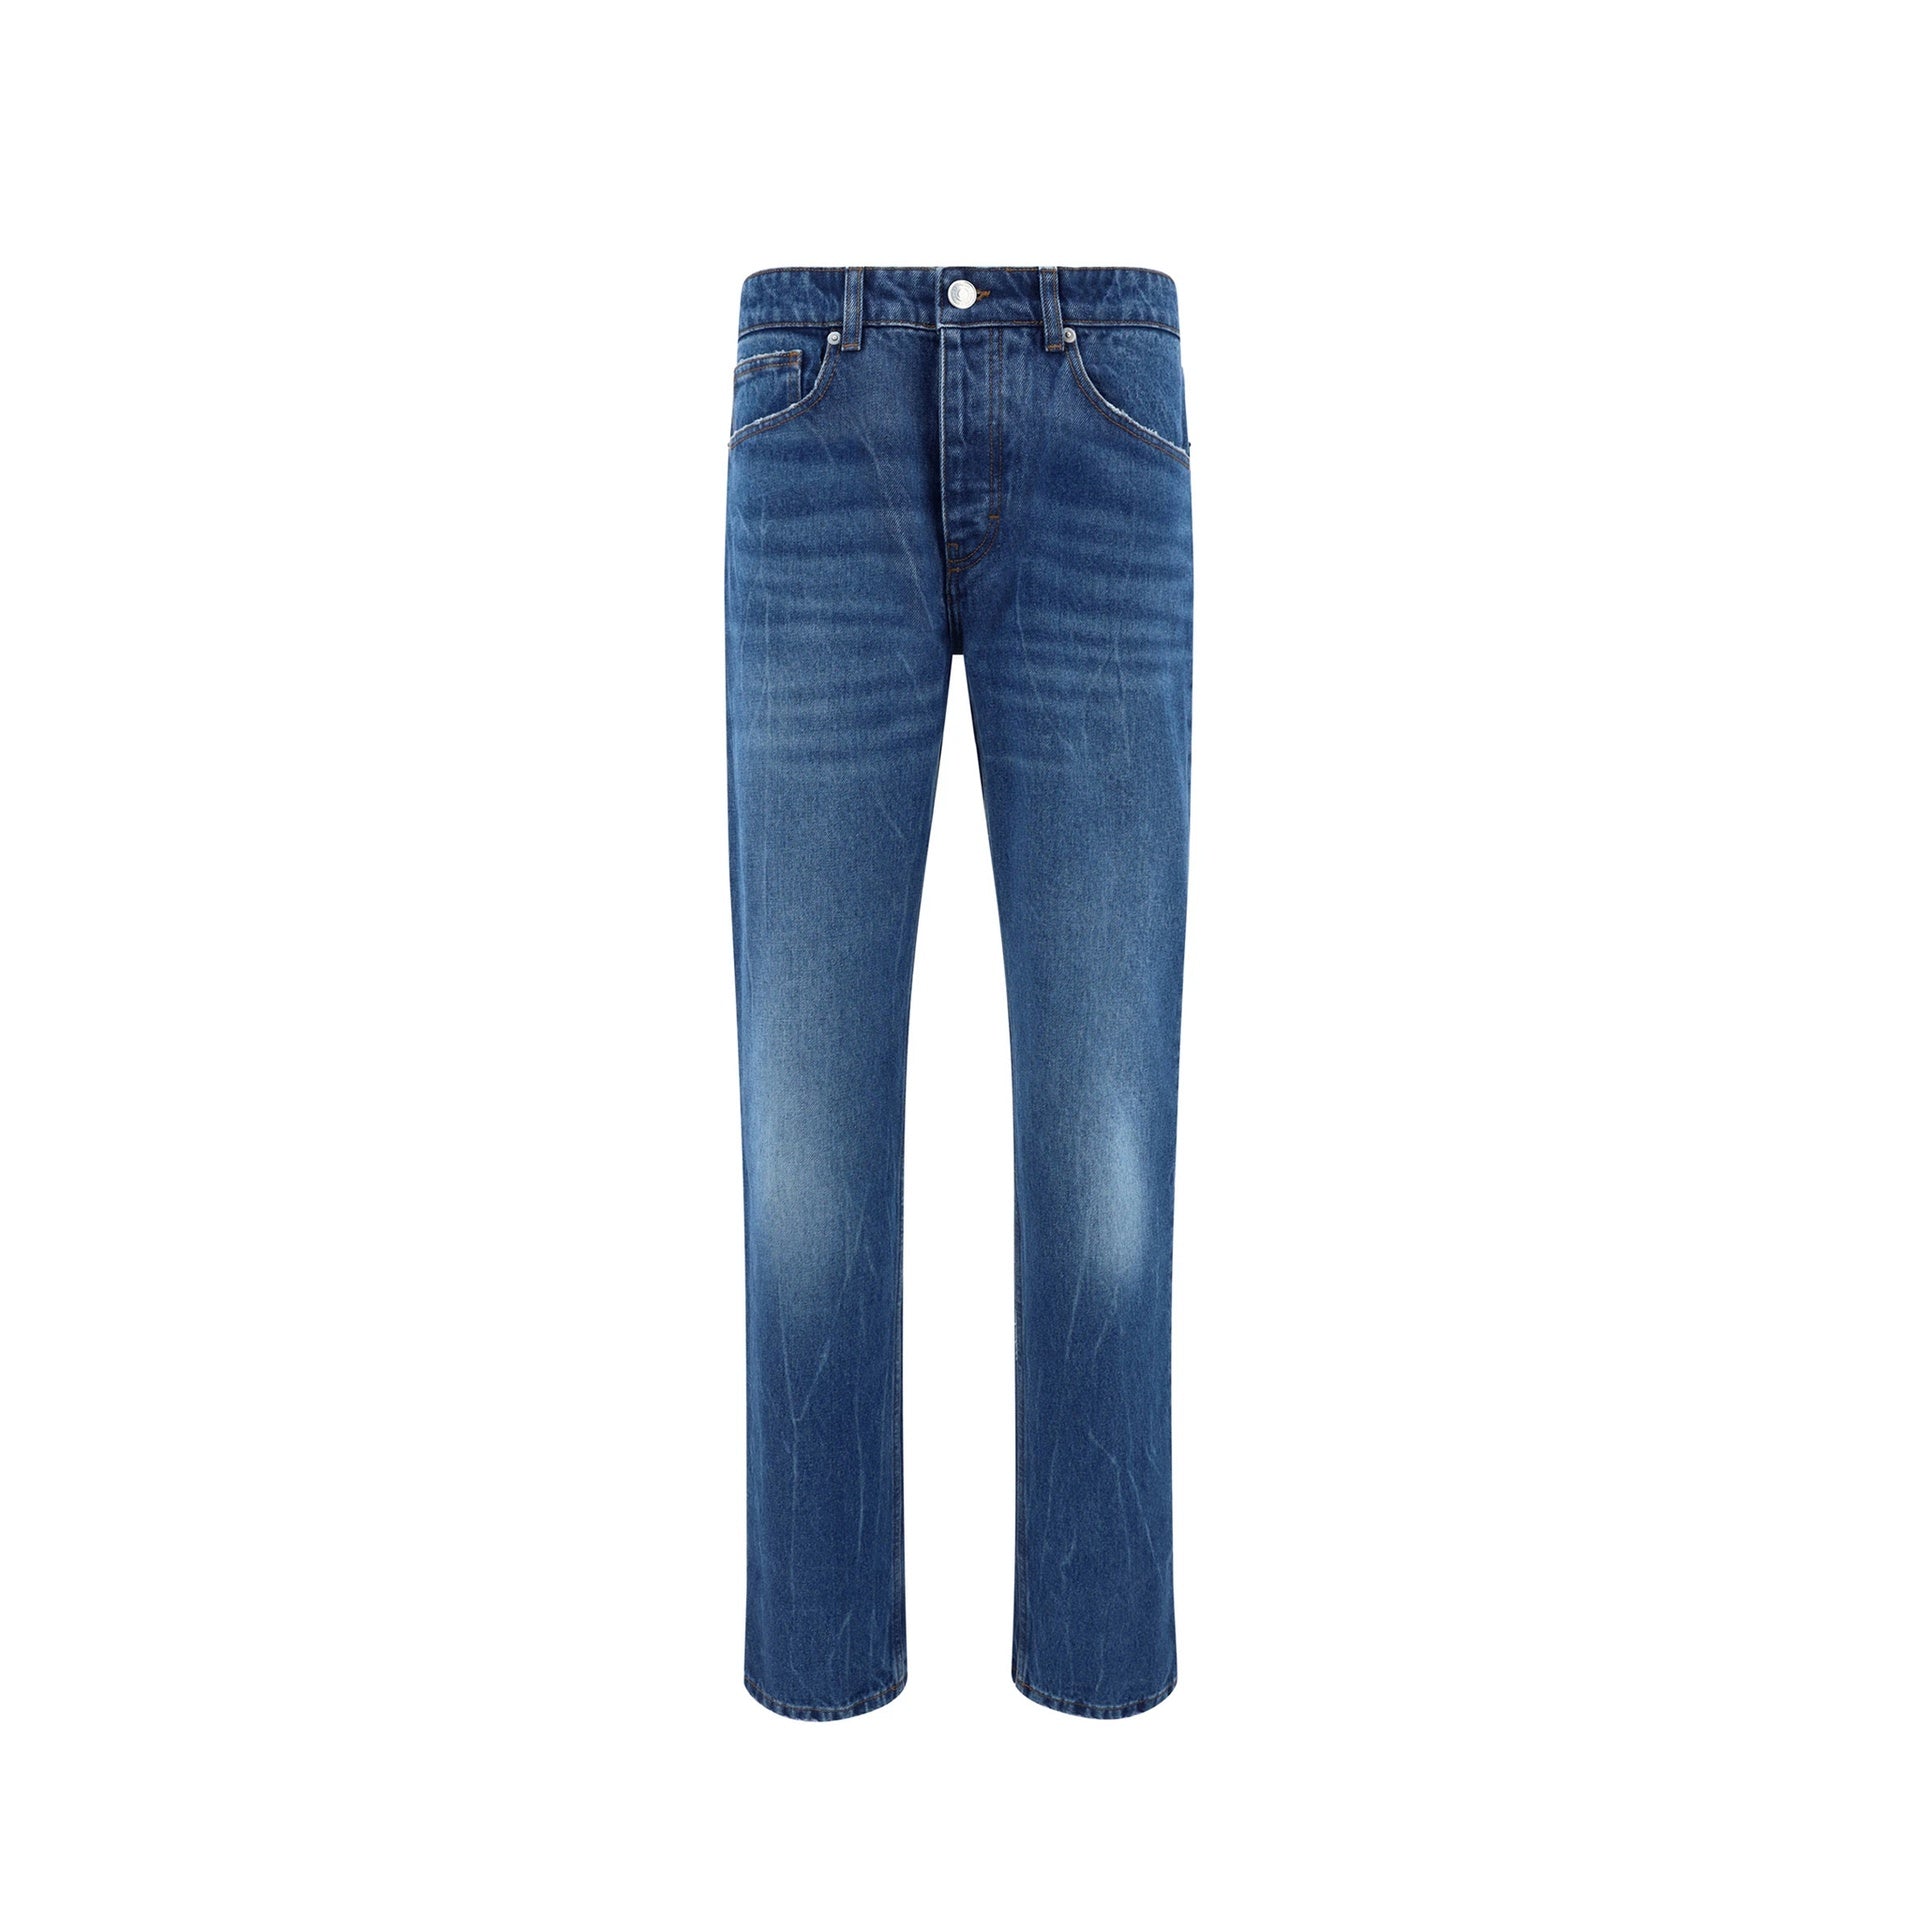 AMI-PARIS-OUTLET-SALE-Ami-Paris-Classic-Fit-Jeans-Hosen-BLUE-33-ARCHIVE-COLLECTION.jpg